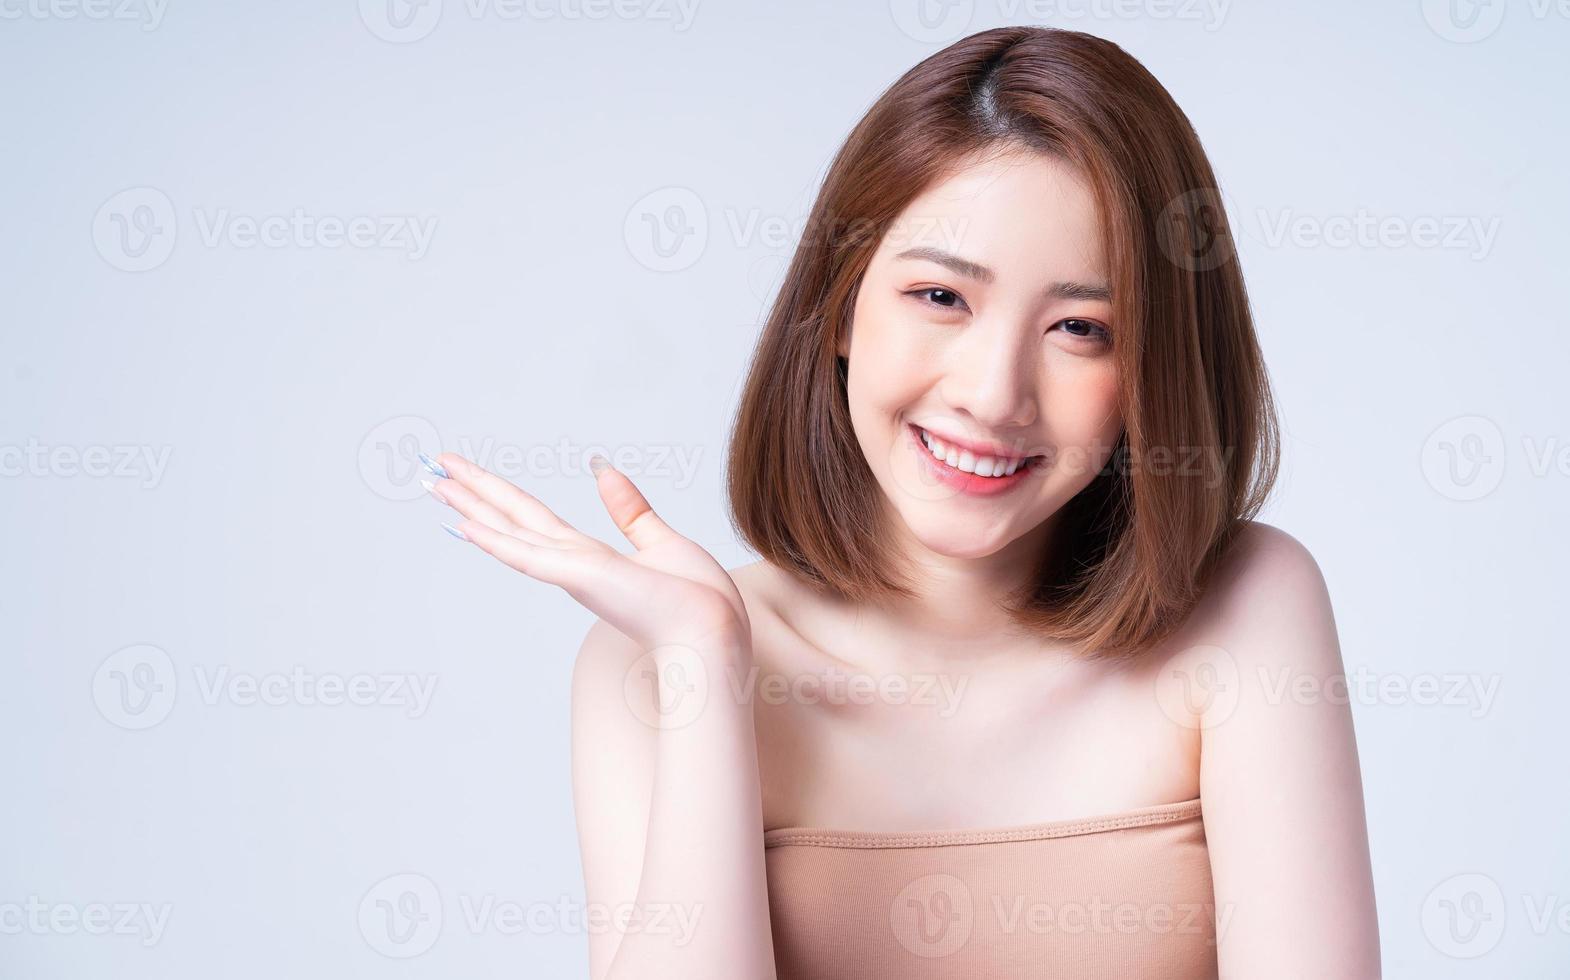 immagine di bellezza della giovane ragazza asiatica con la pelle perfetta foto